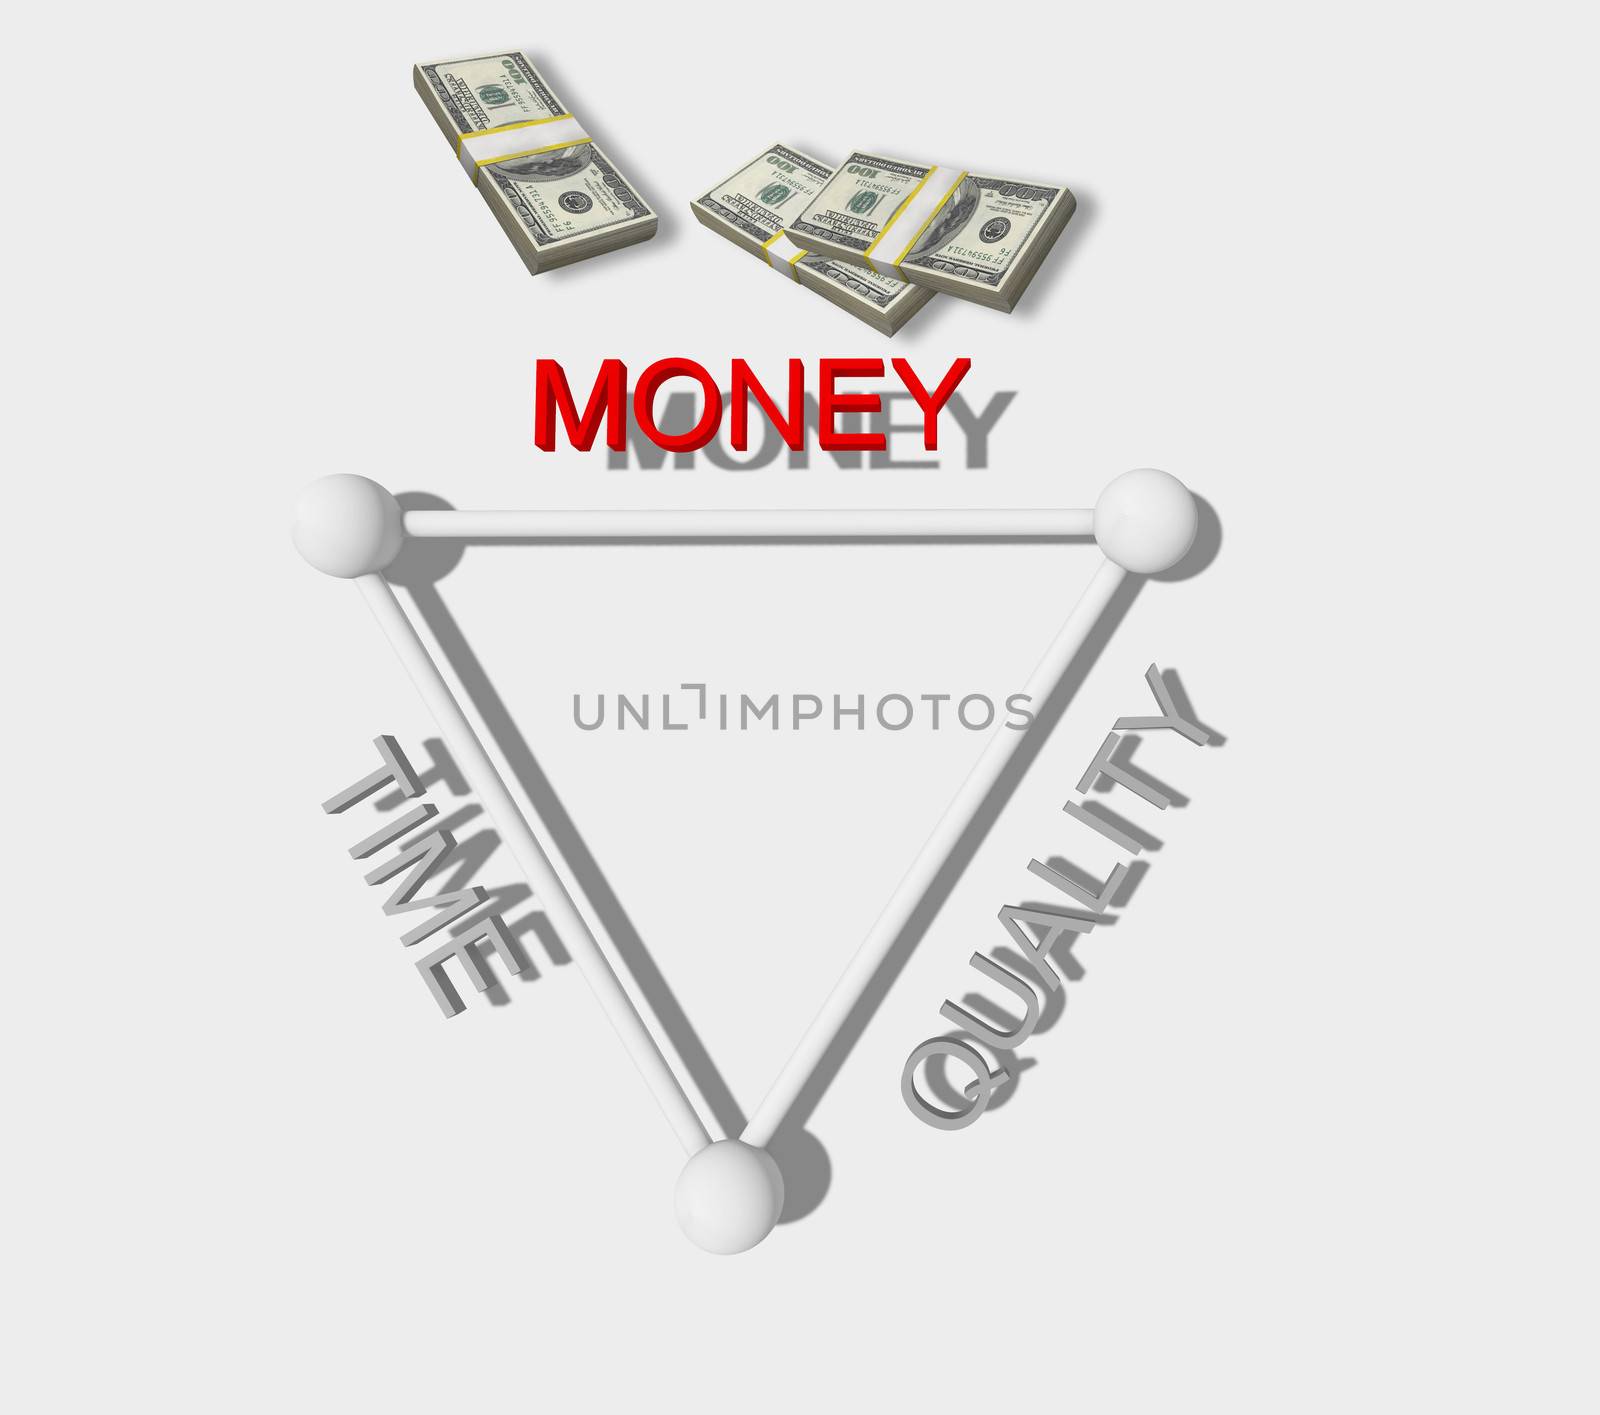 time, quality and money by vitanovski